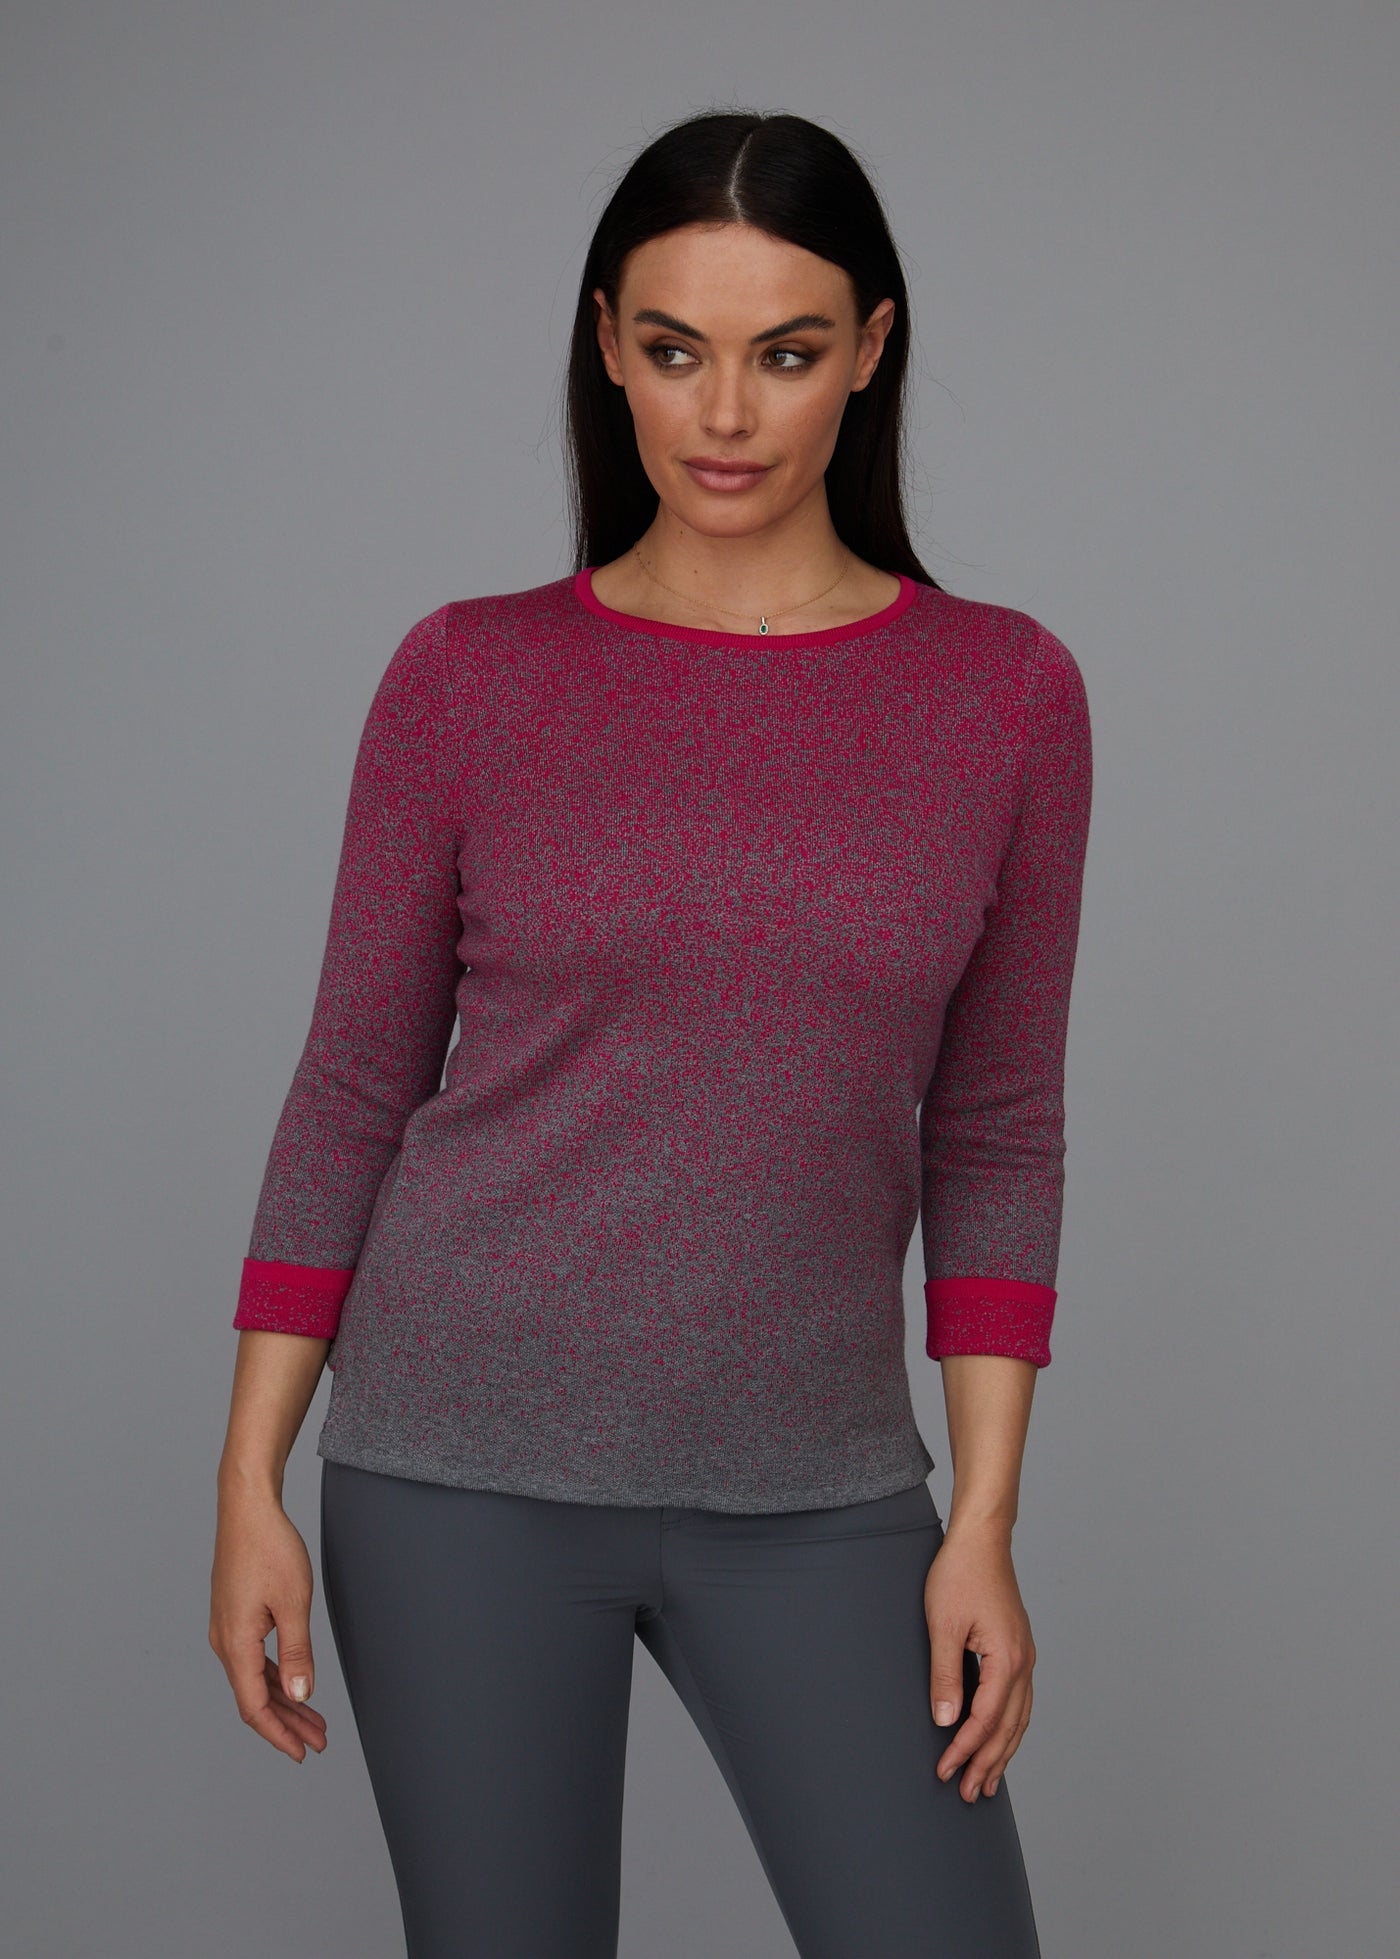 Pixelated Crewneck Sweater: FINAL SALE